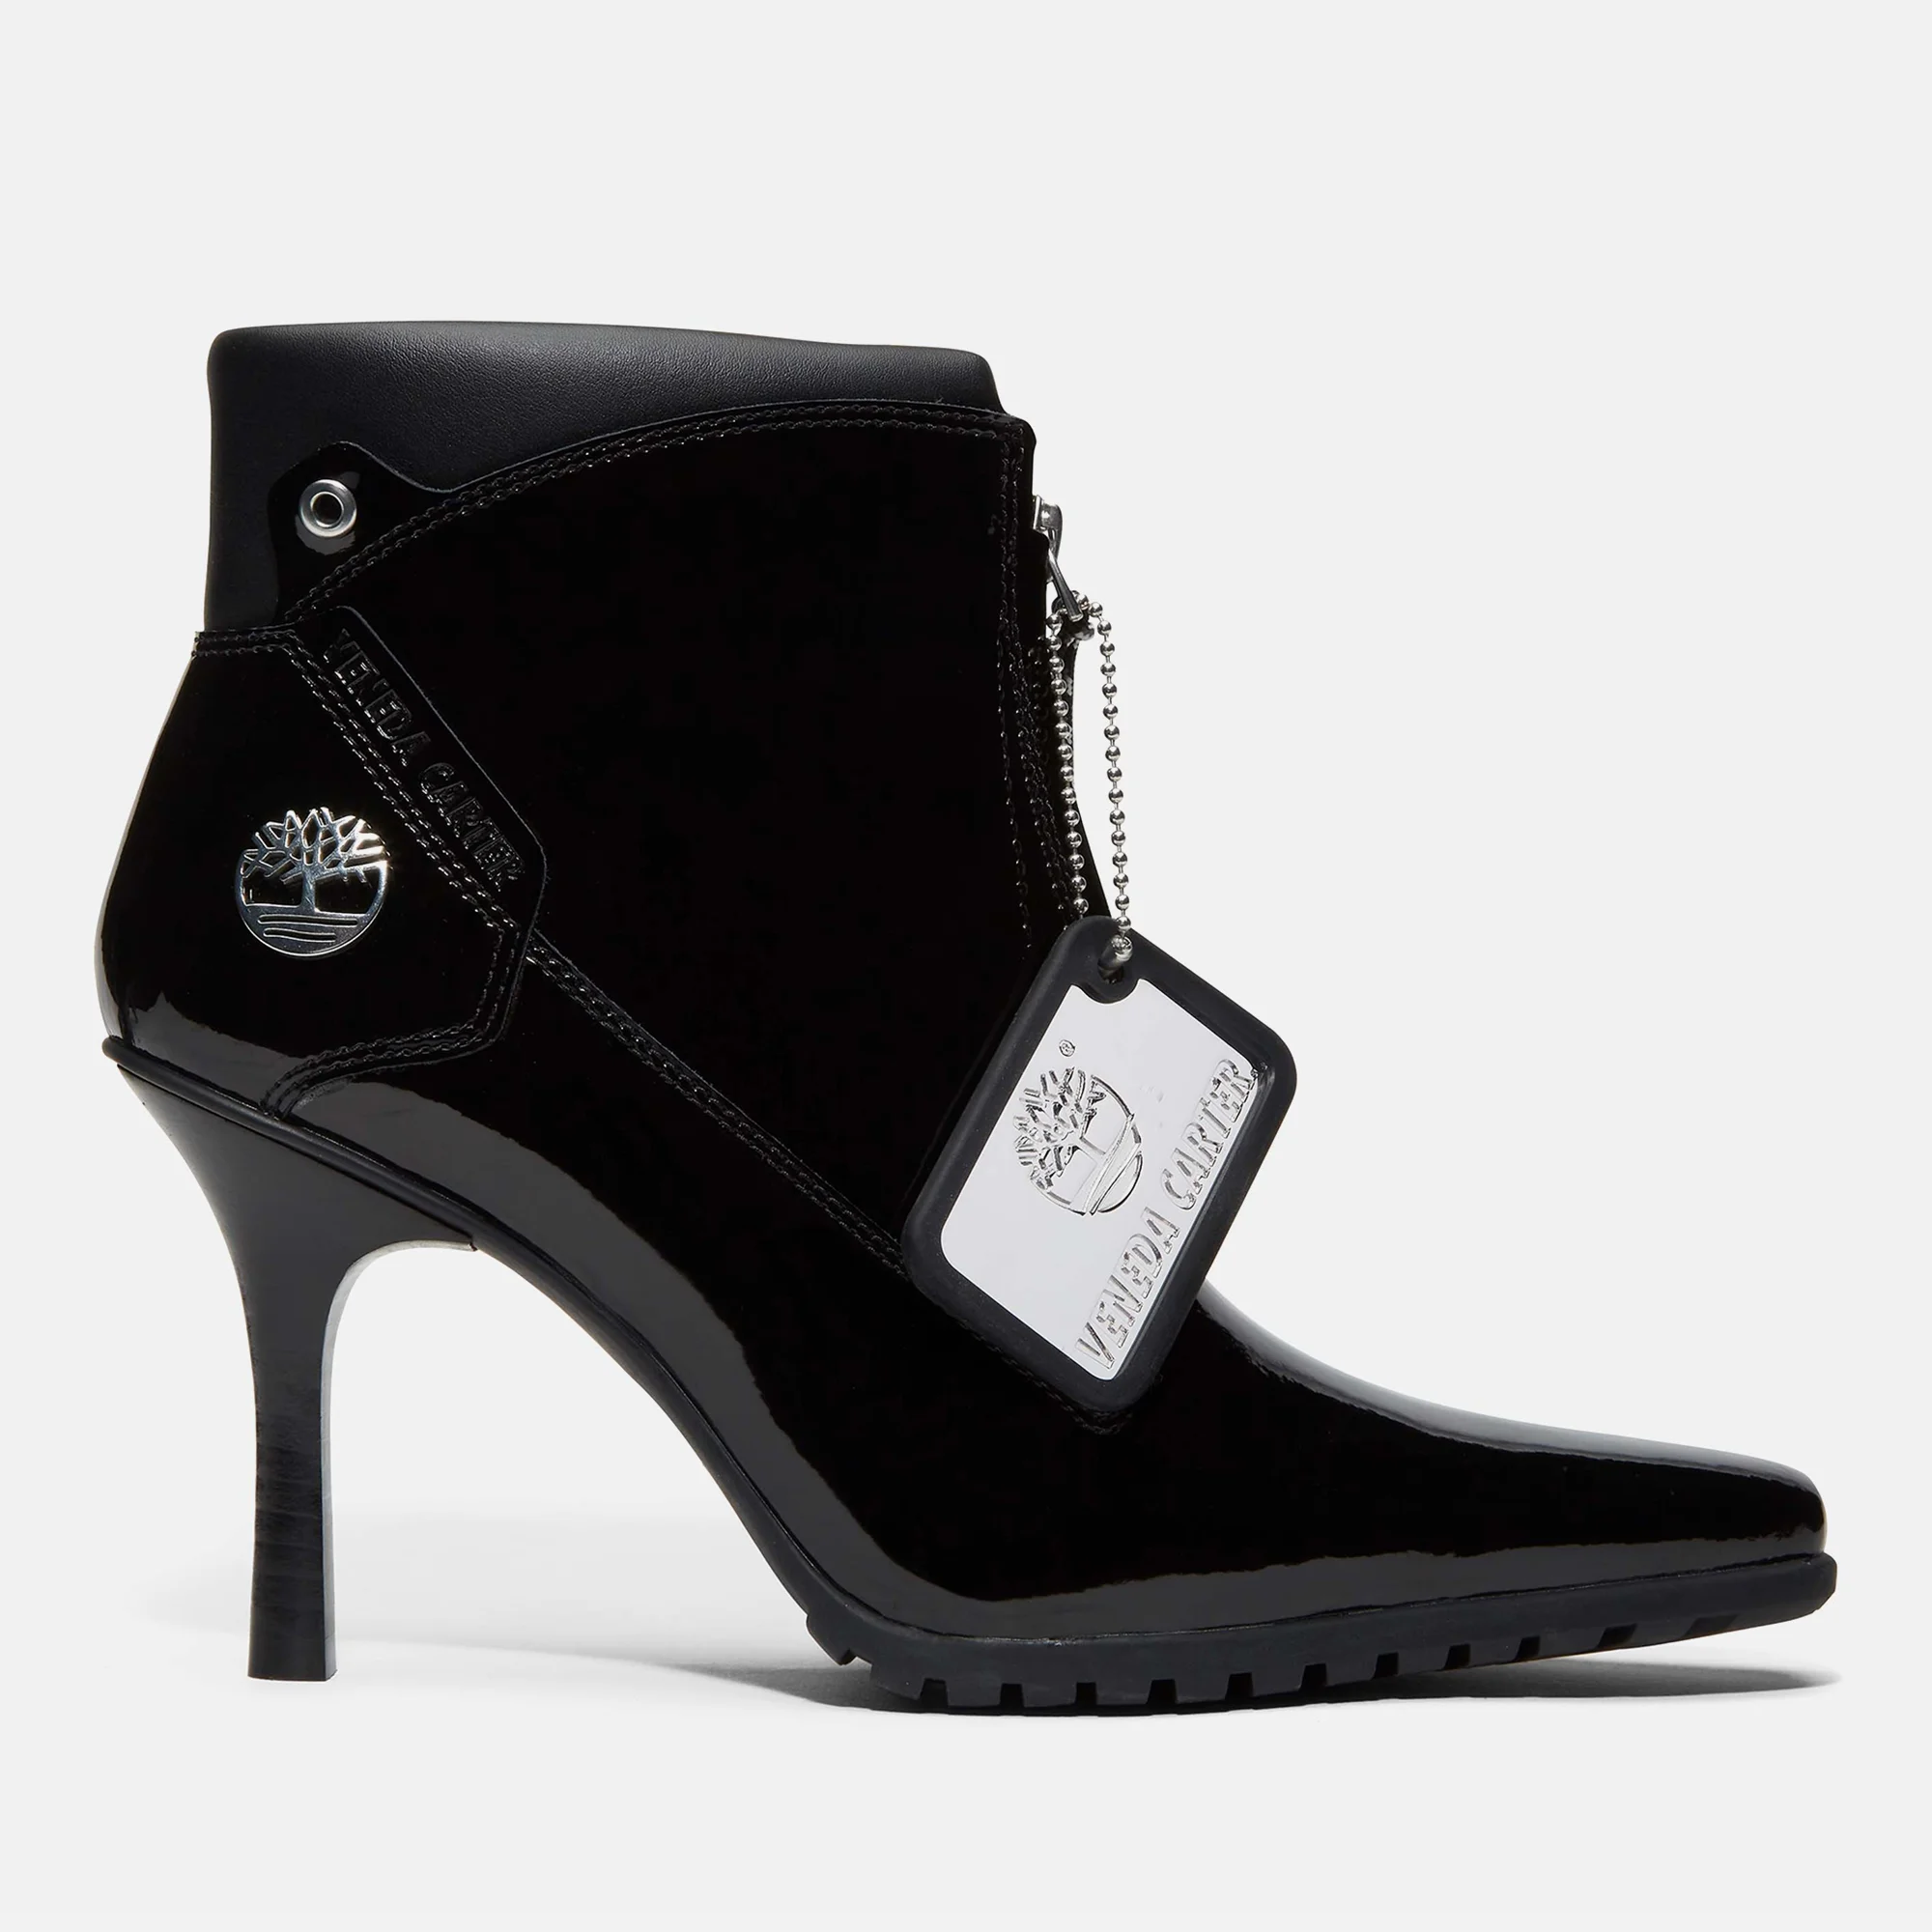 Timberland X Veneda Carter Women's Premium Mid Zip Up Boots - Black Image 1